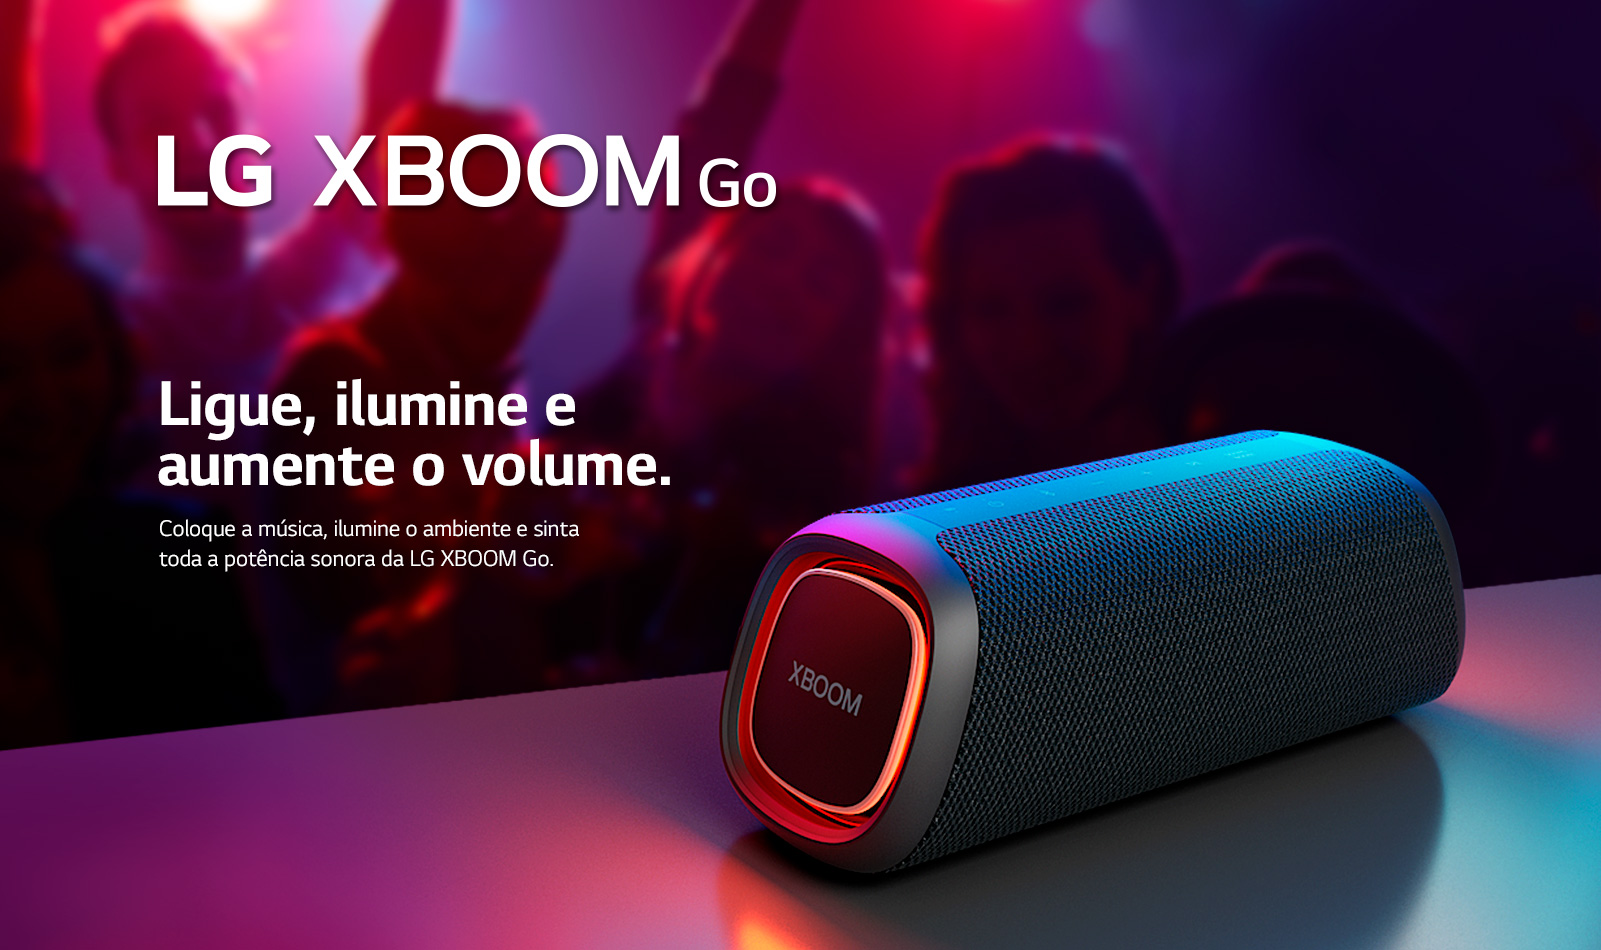 Caixa de som LG XBOOM Go, em meio a uma festa trazendo alegria para quem está ouvindo